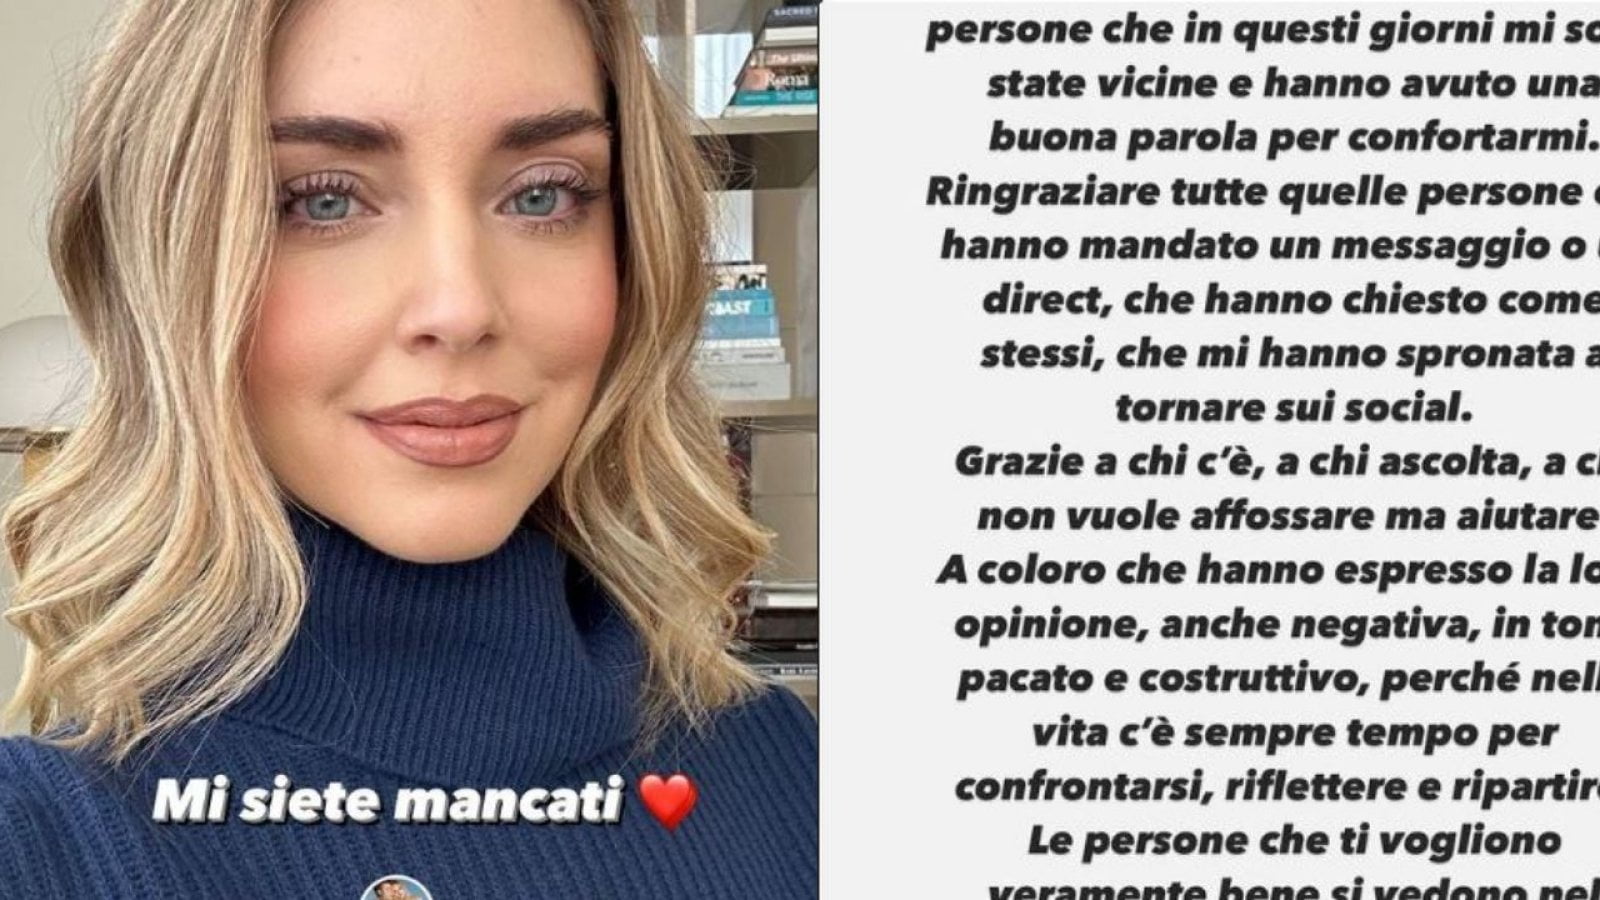 Chiara Ferragni torna su Instagram, il messaggio ai fan: «Mi siete mancati. Come state? Nella vita c'è sempre tempo per ripartire»